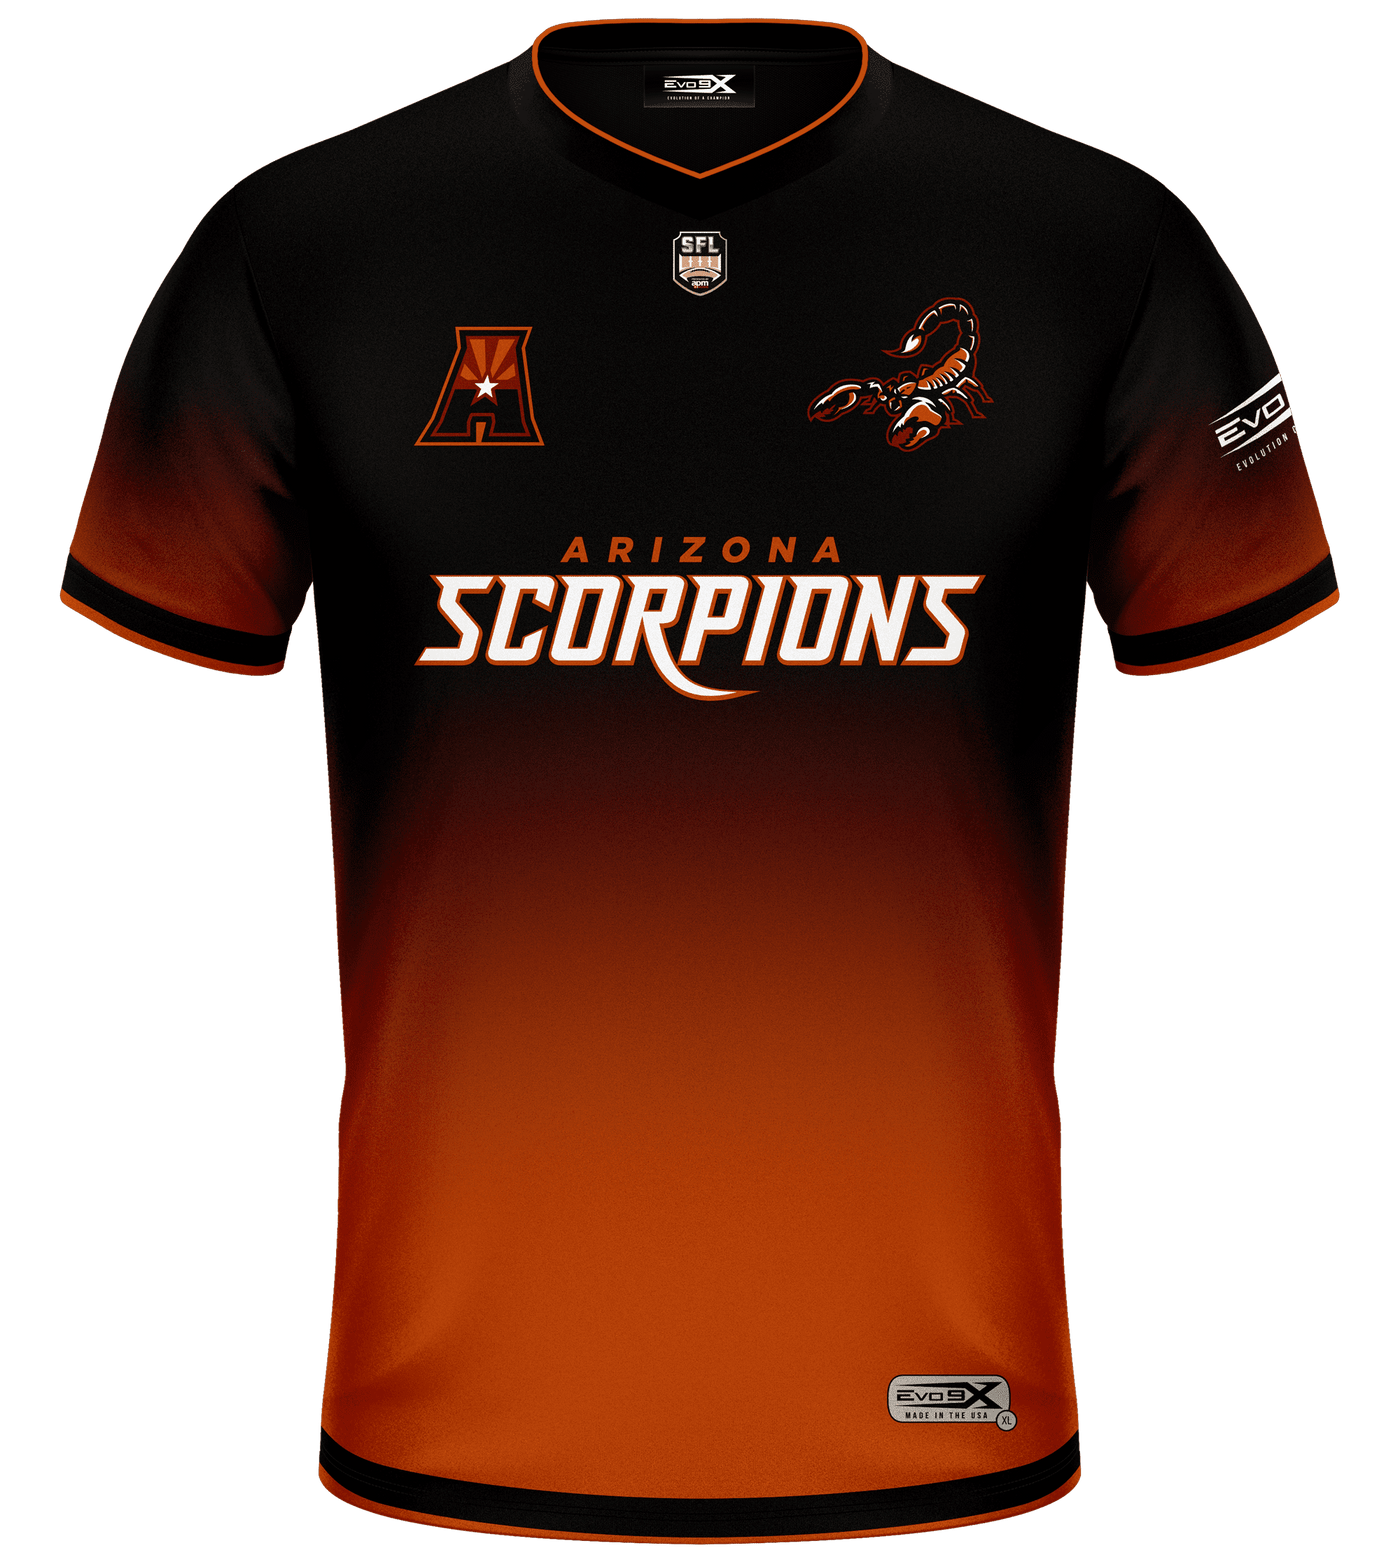 Arizona scorpions Pro Jersey